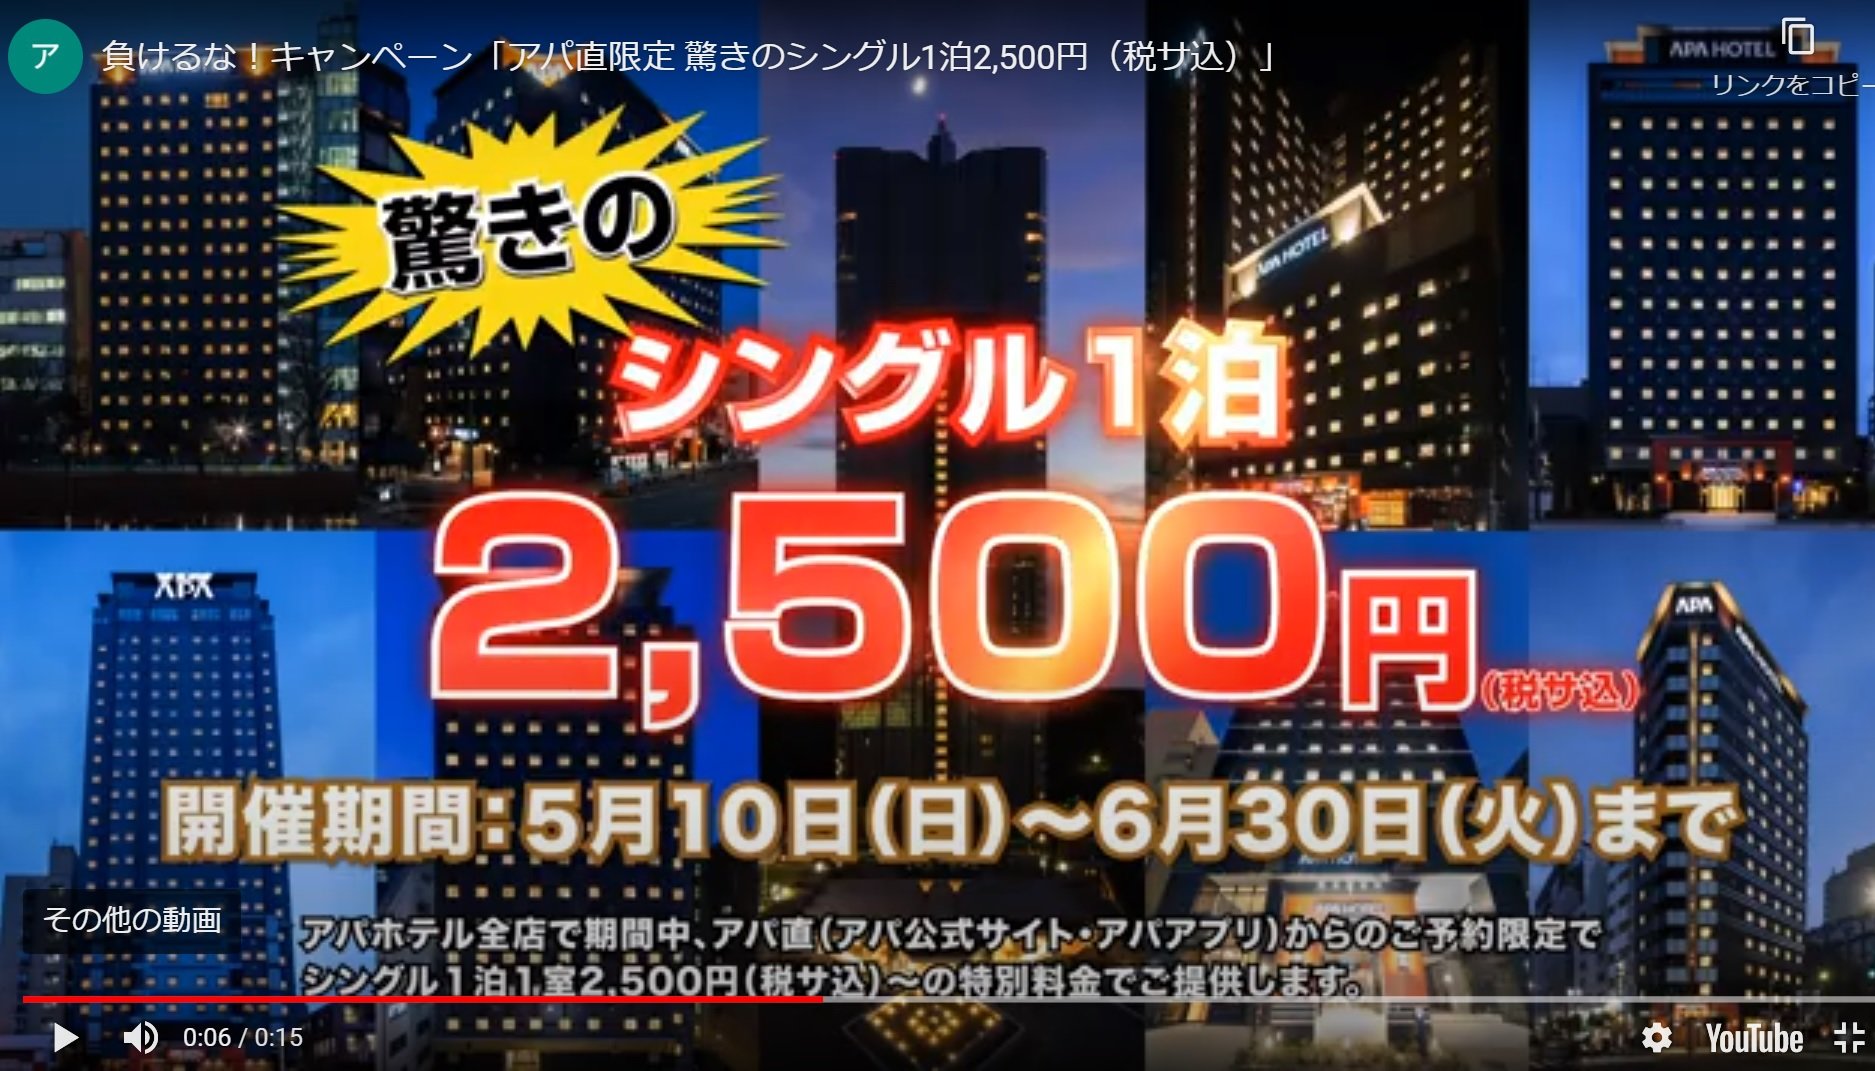 アパホテル、素泊まり2500円の「新型コロナウイルスに負けるなキャンペーン」開始